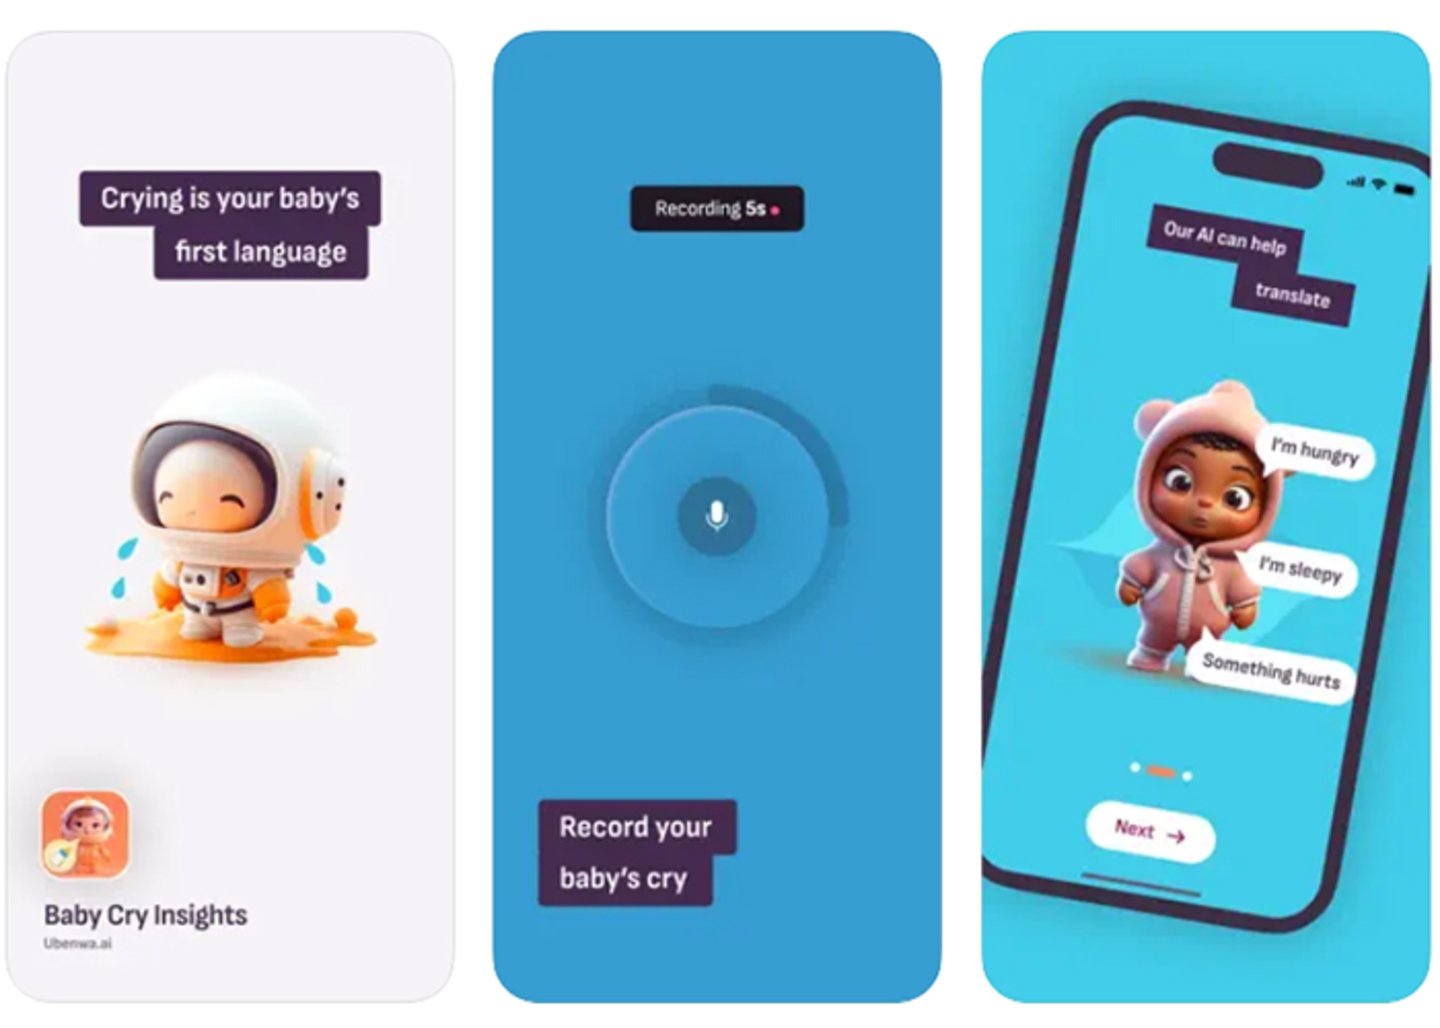 Baby Cry Insights Translator- descubre lo que realmente quiere decir tu bebe